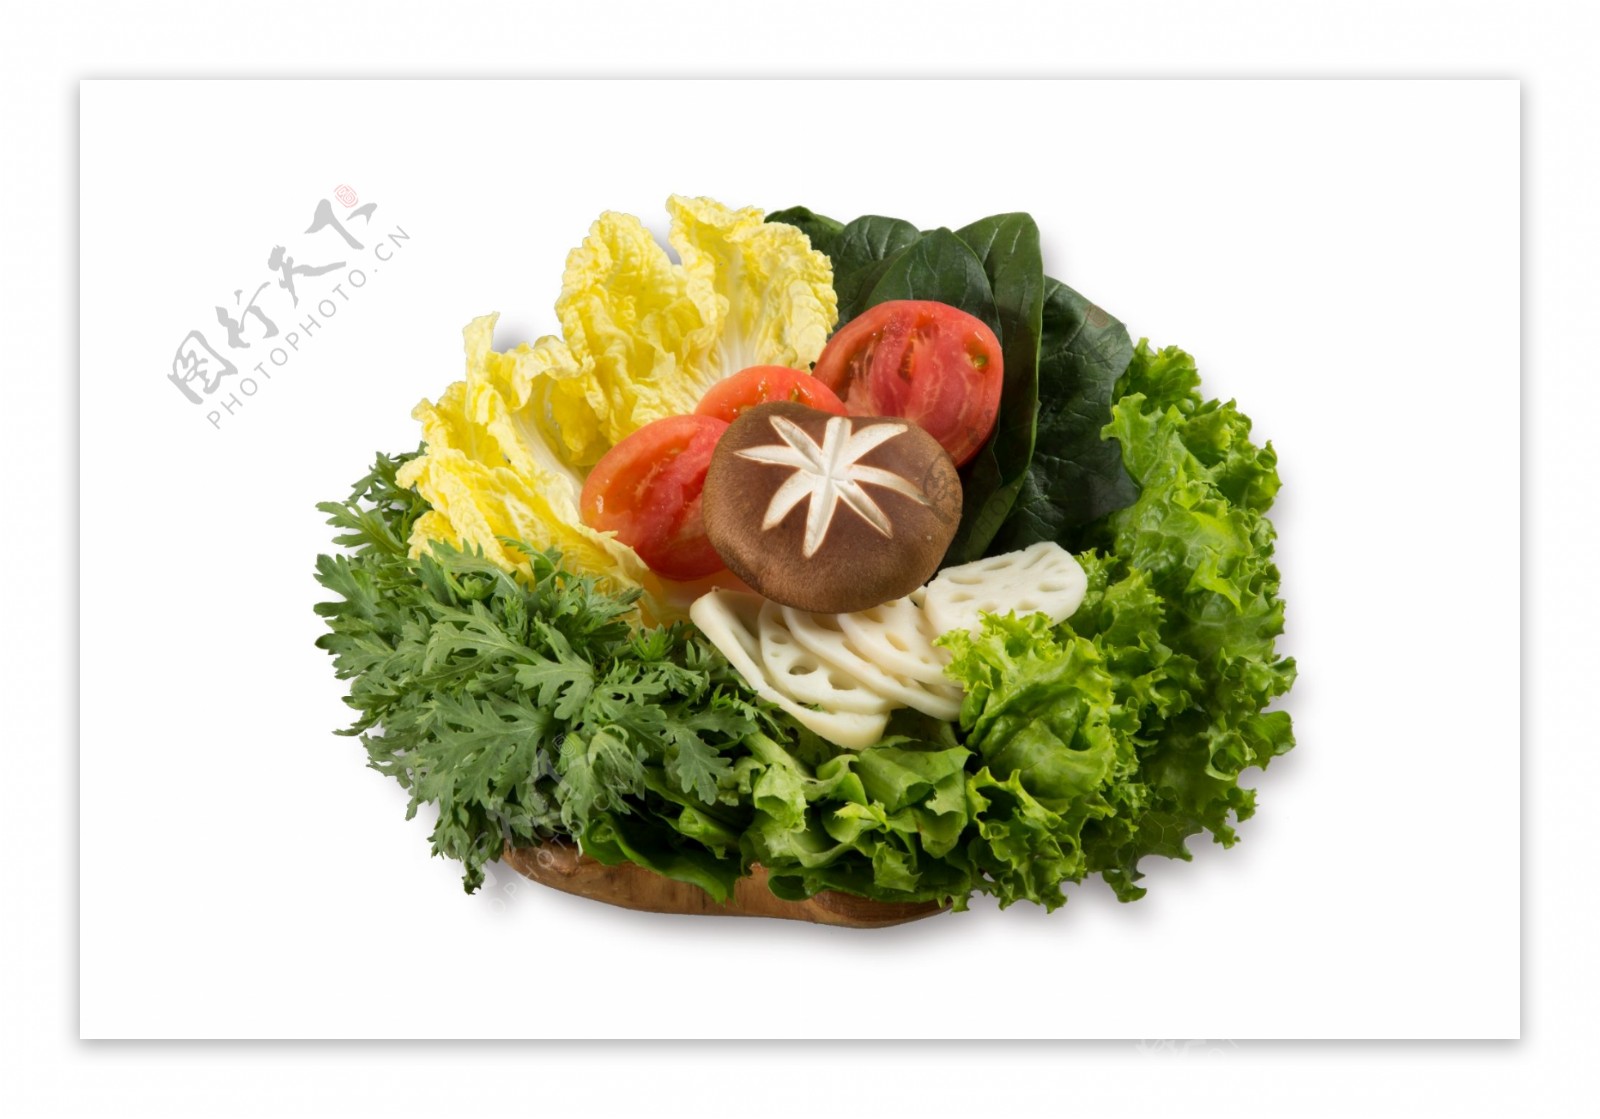 蔬菜拼贴画 库存图片. 图片 包括有 胡椒, 沙拉, 唐莴苣, 圆白菜, 朝鲜蓟, 绿色, 玉米, 瑞士 - 64504151